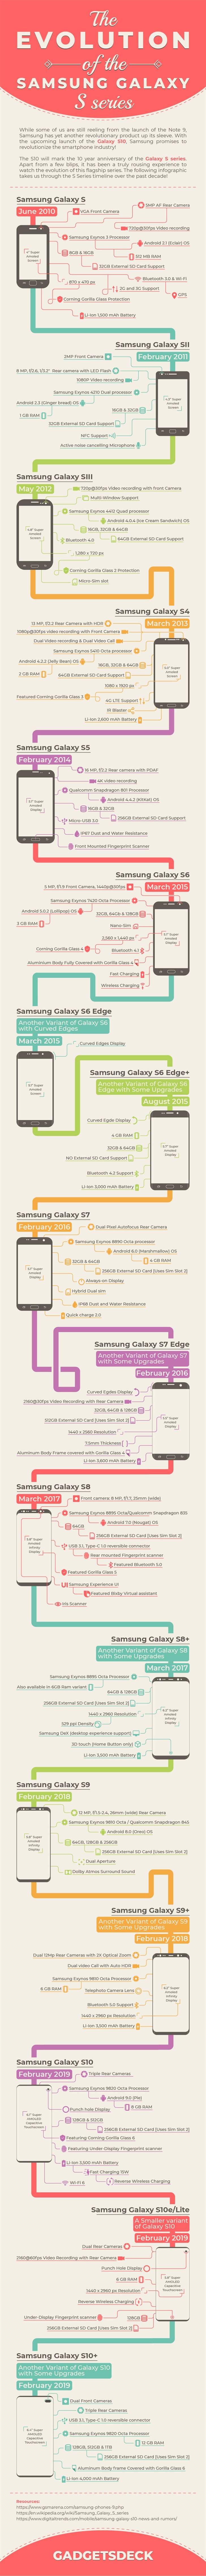 手机极速清理，一图看懂三星 Galaxy S 系列机型生长历程